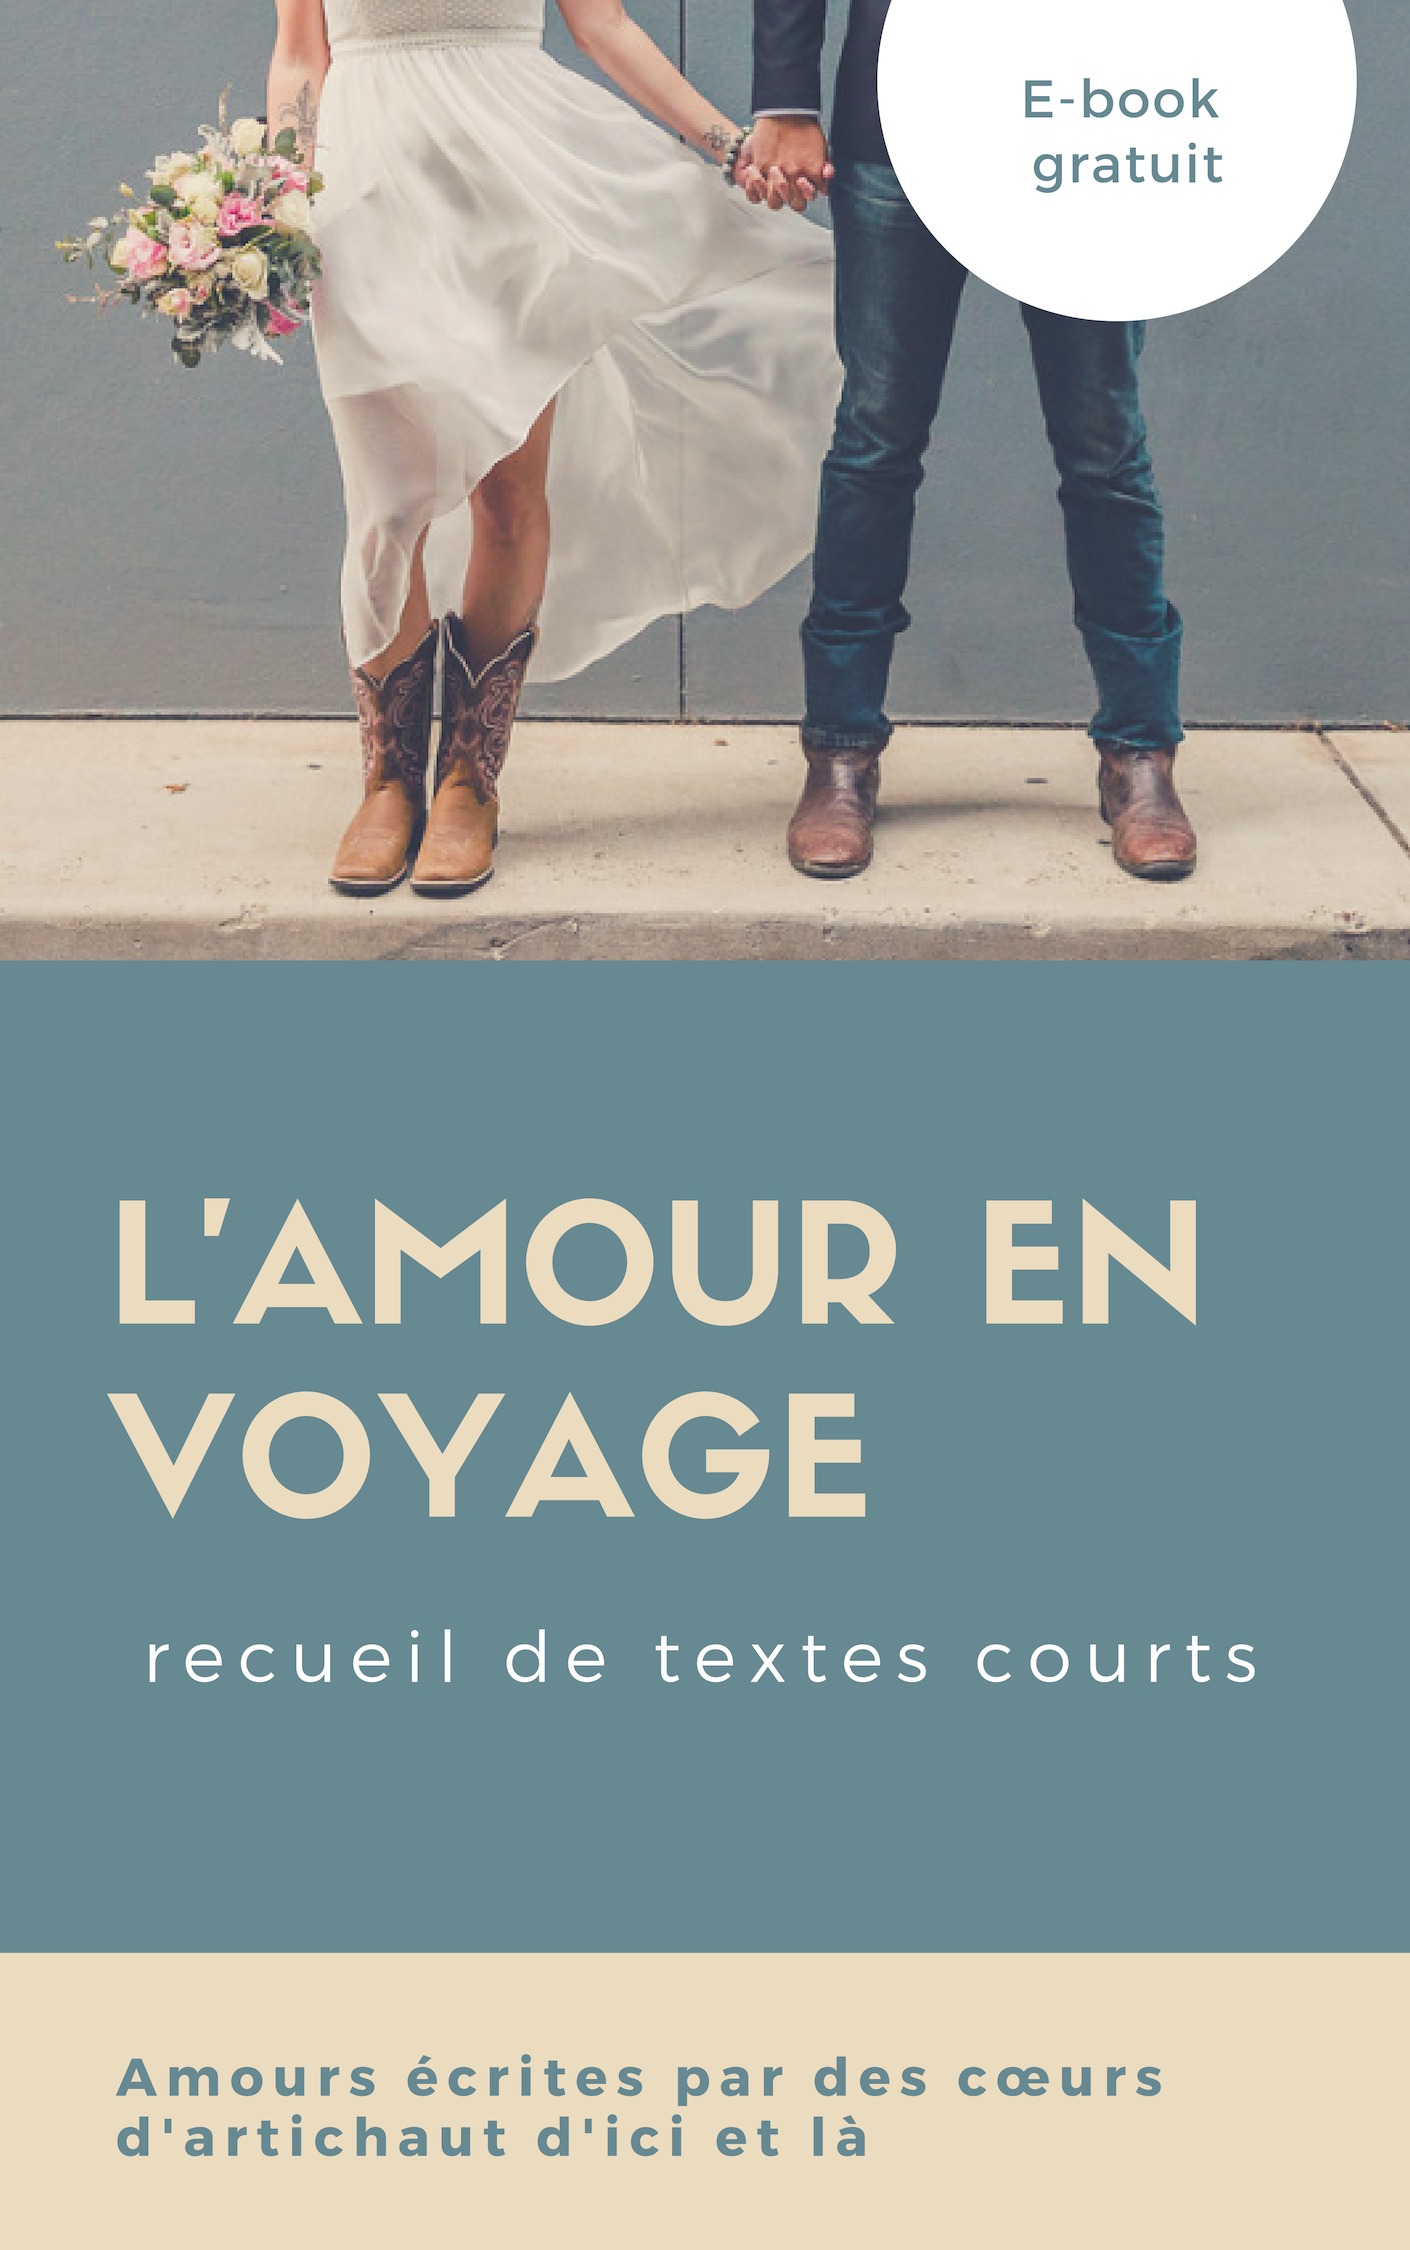 L'amour en voyage - ebook gratuit